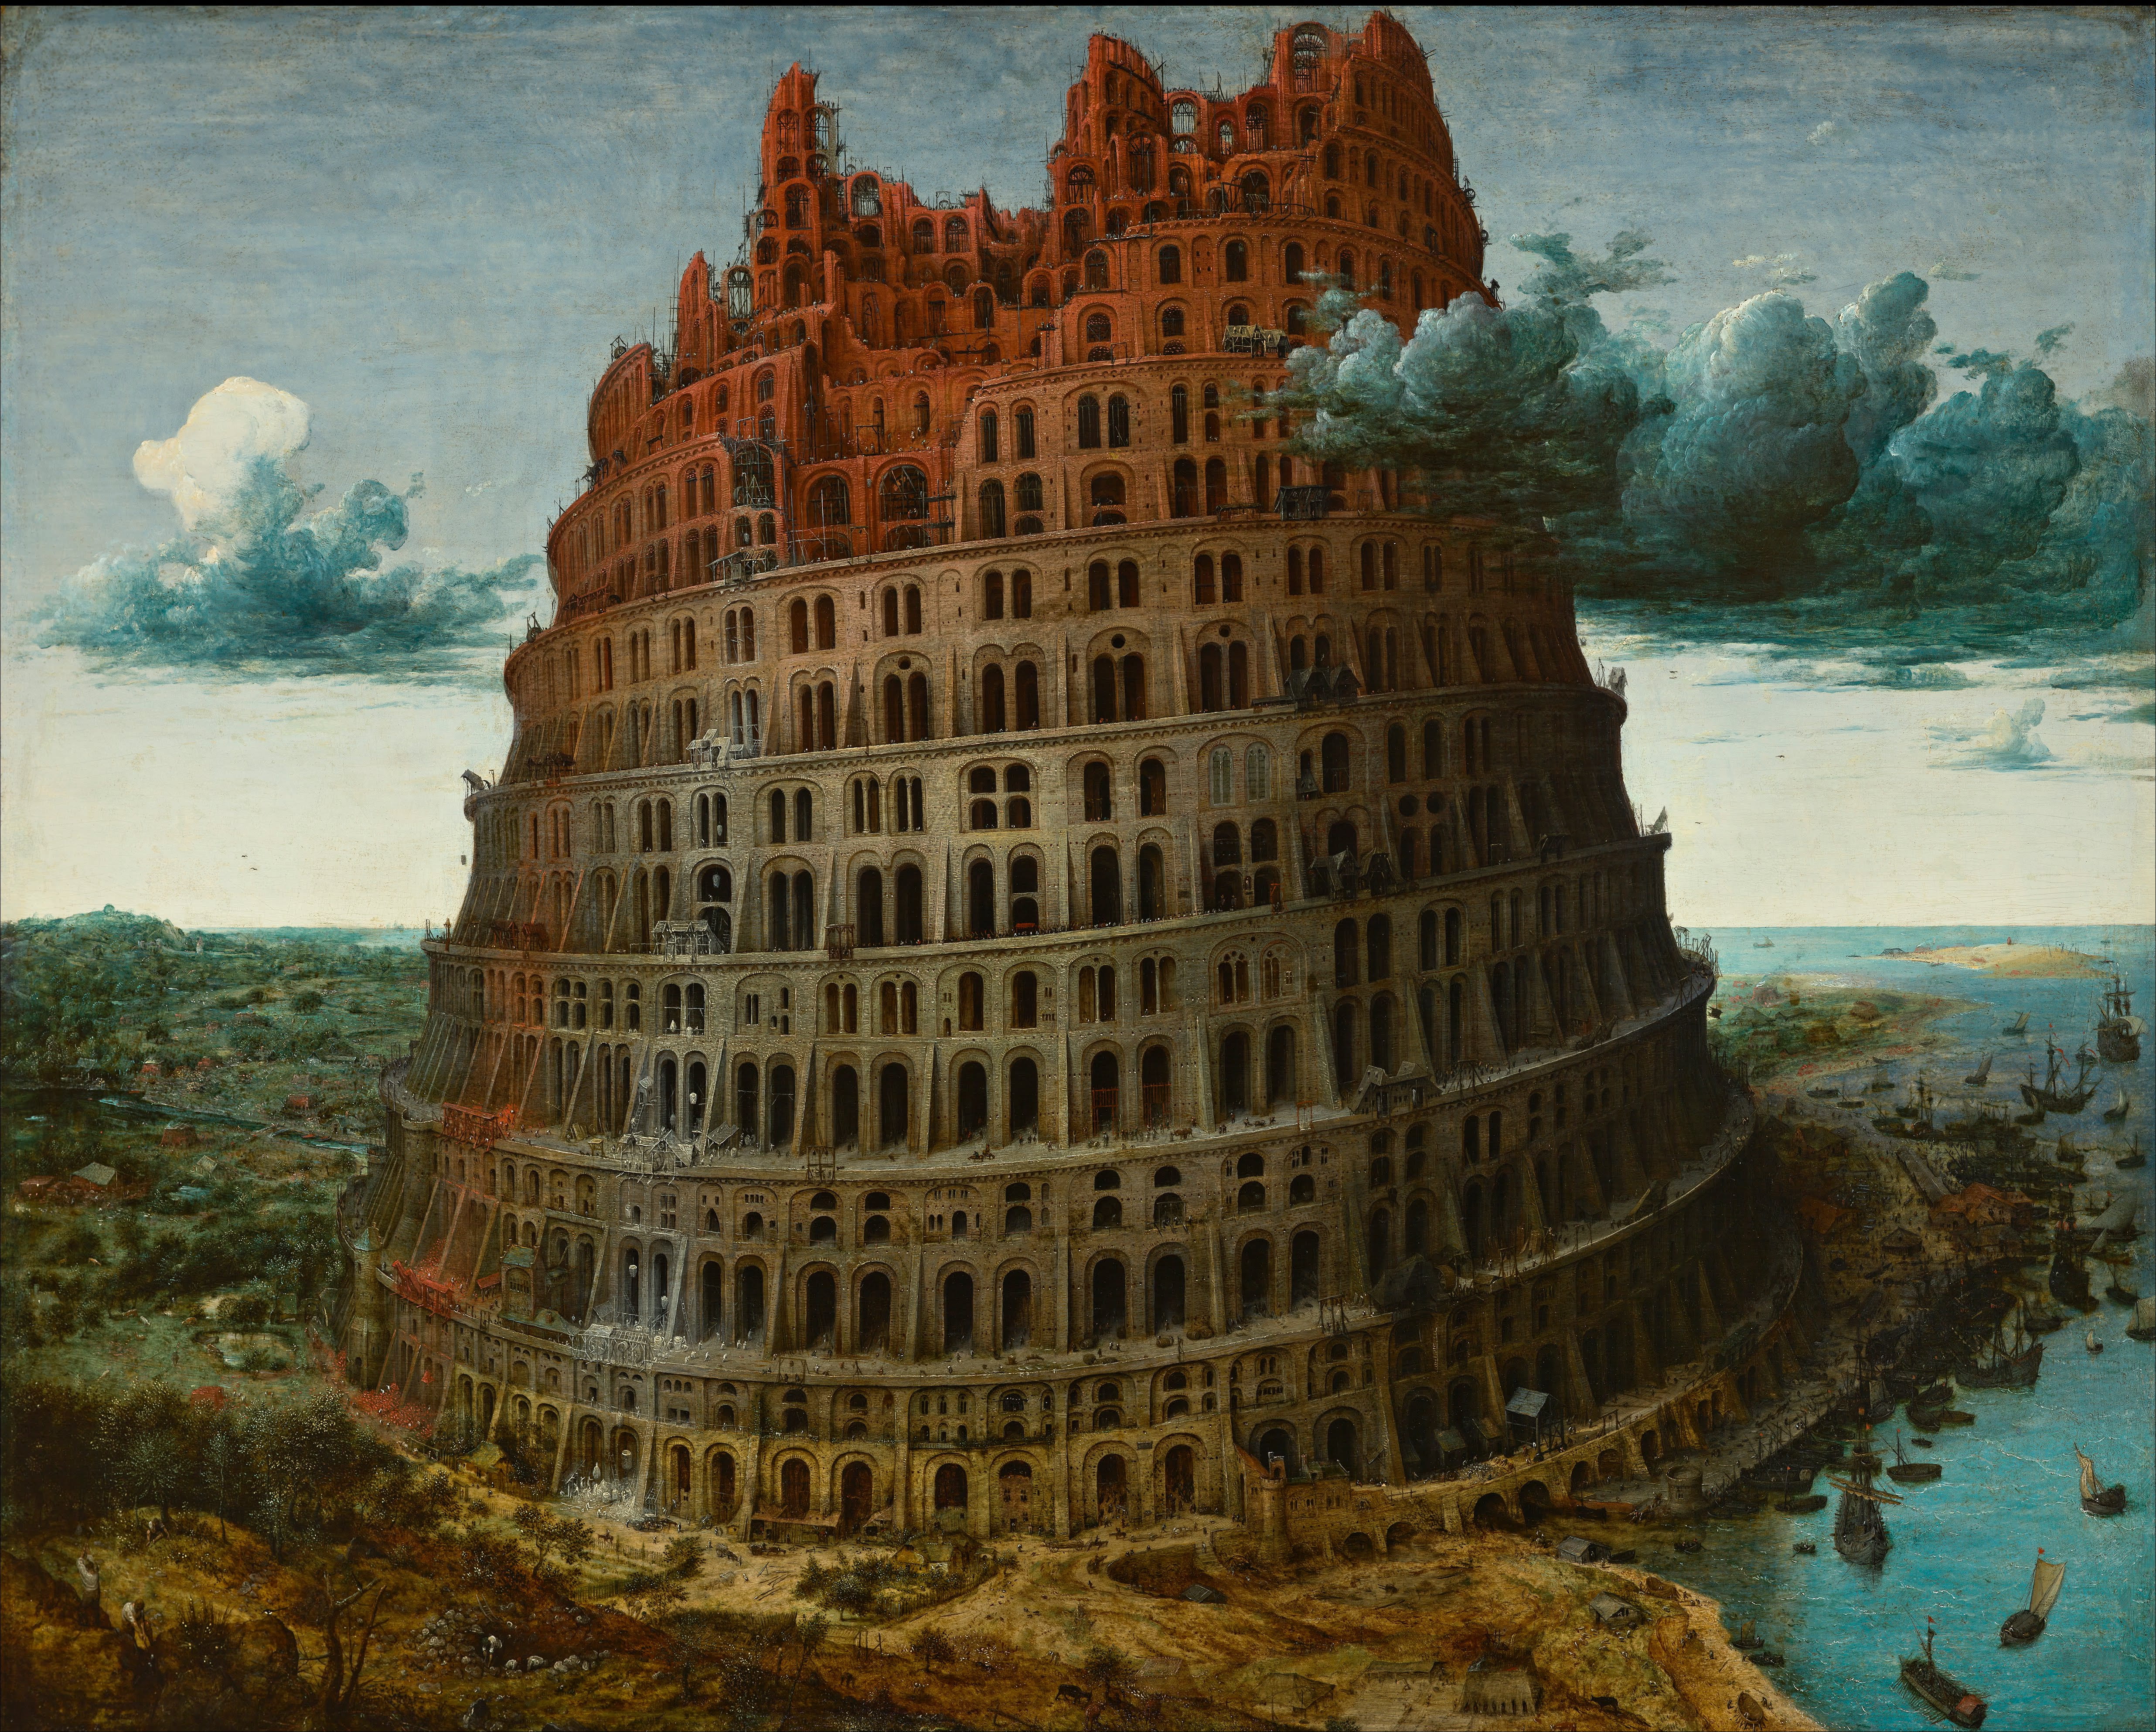 Pieter Bruegel the Elder - The Tower of Babel